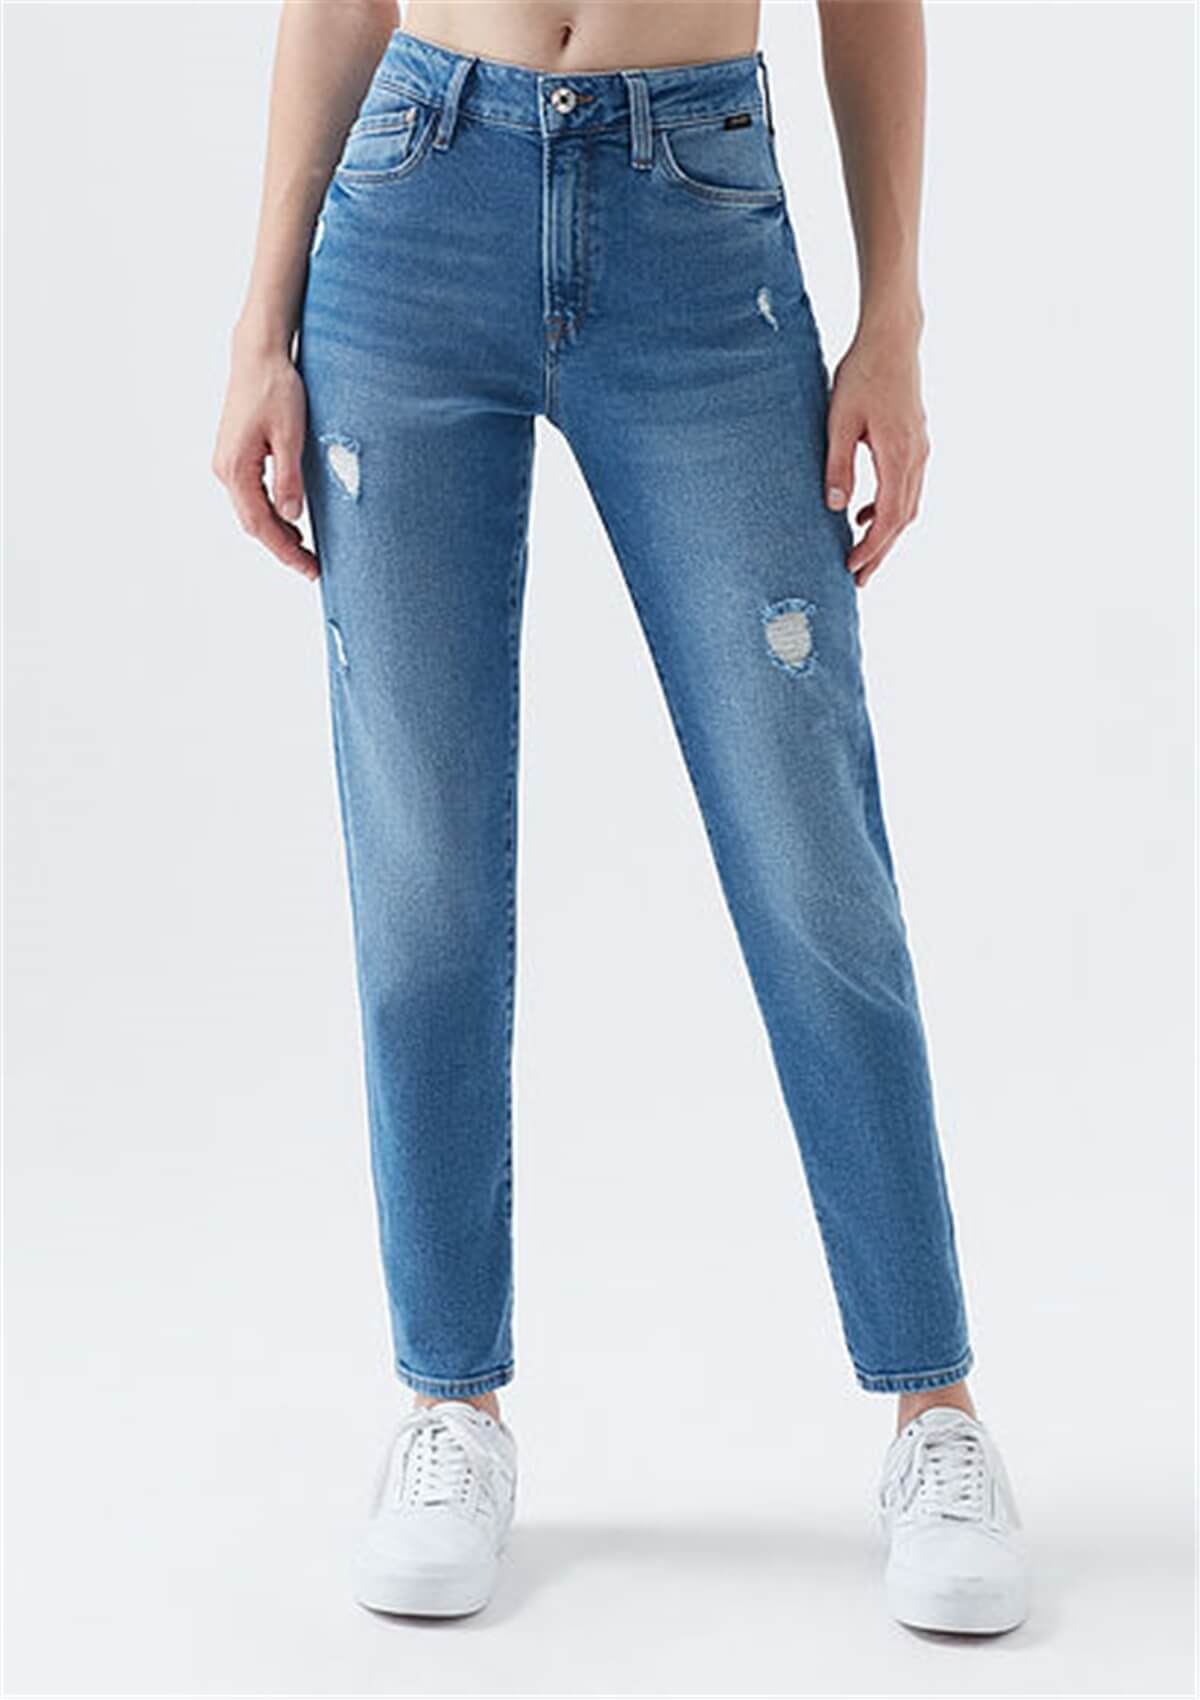 Mavi Jeans Mykonos Ripped Gold Açık Mavi Yırtık Model Kadın Kot Pantolon